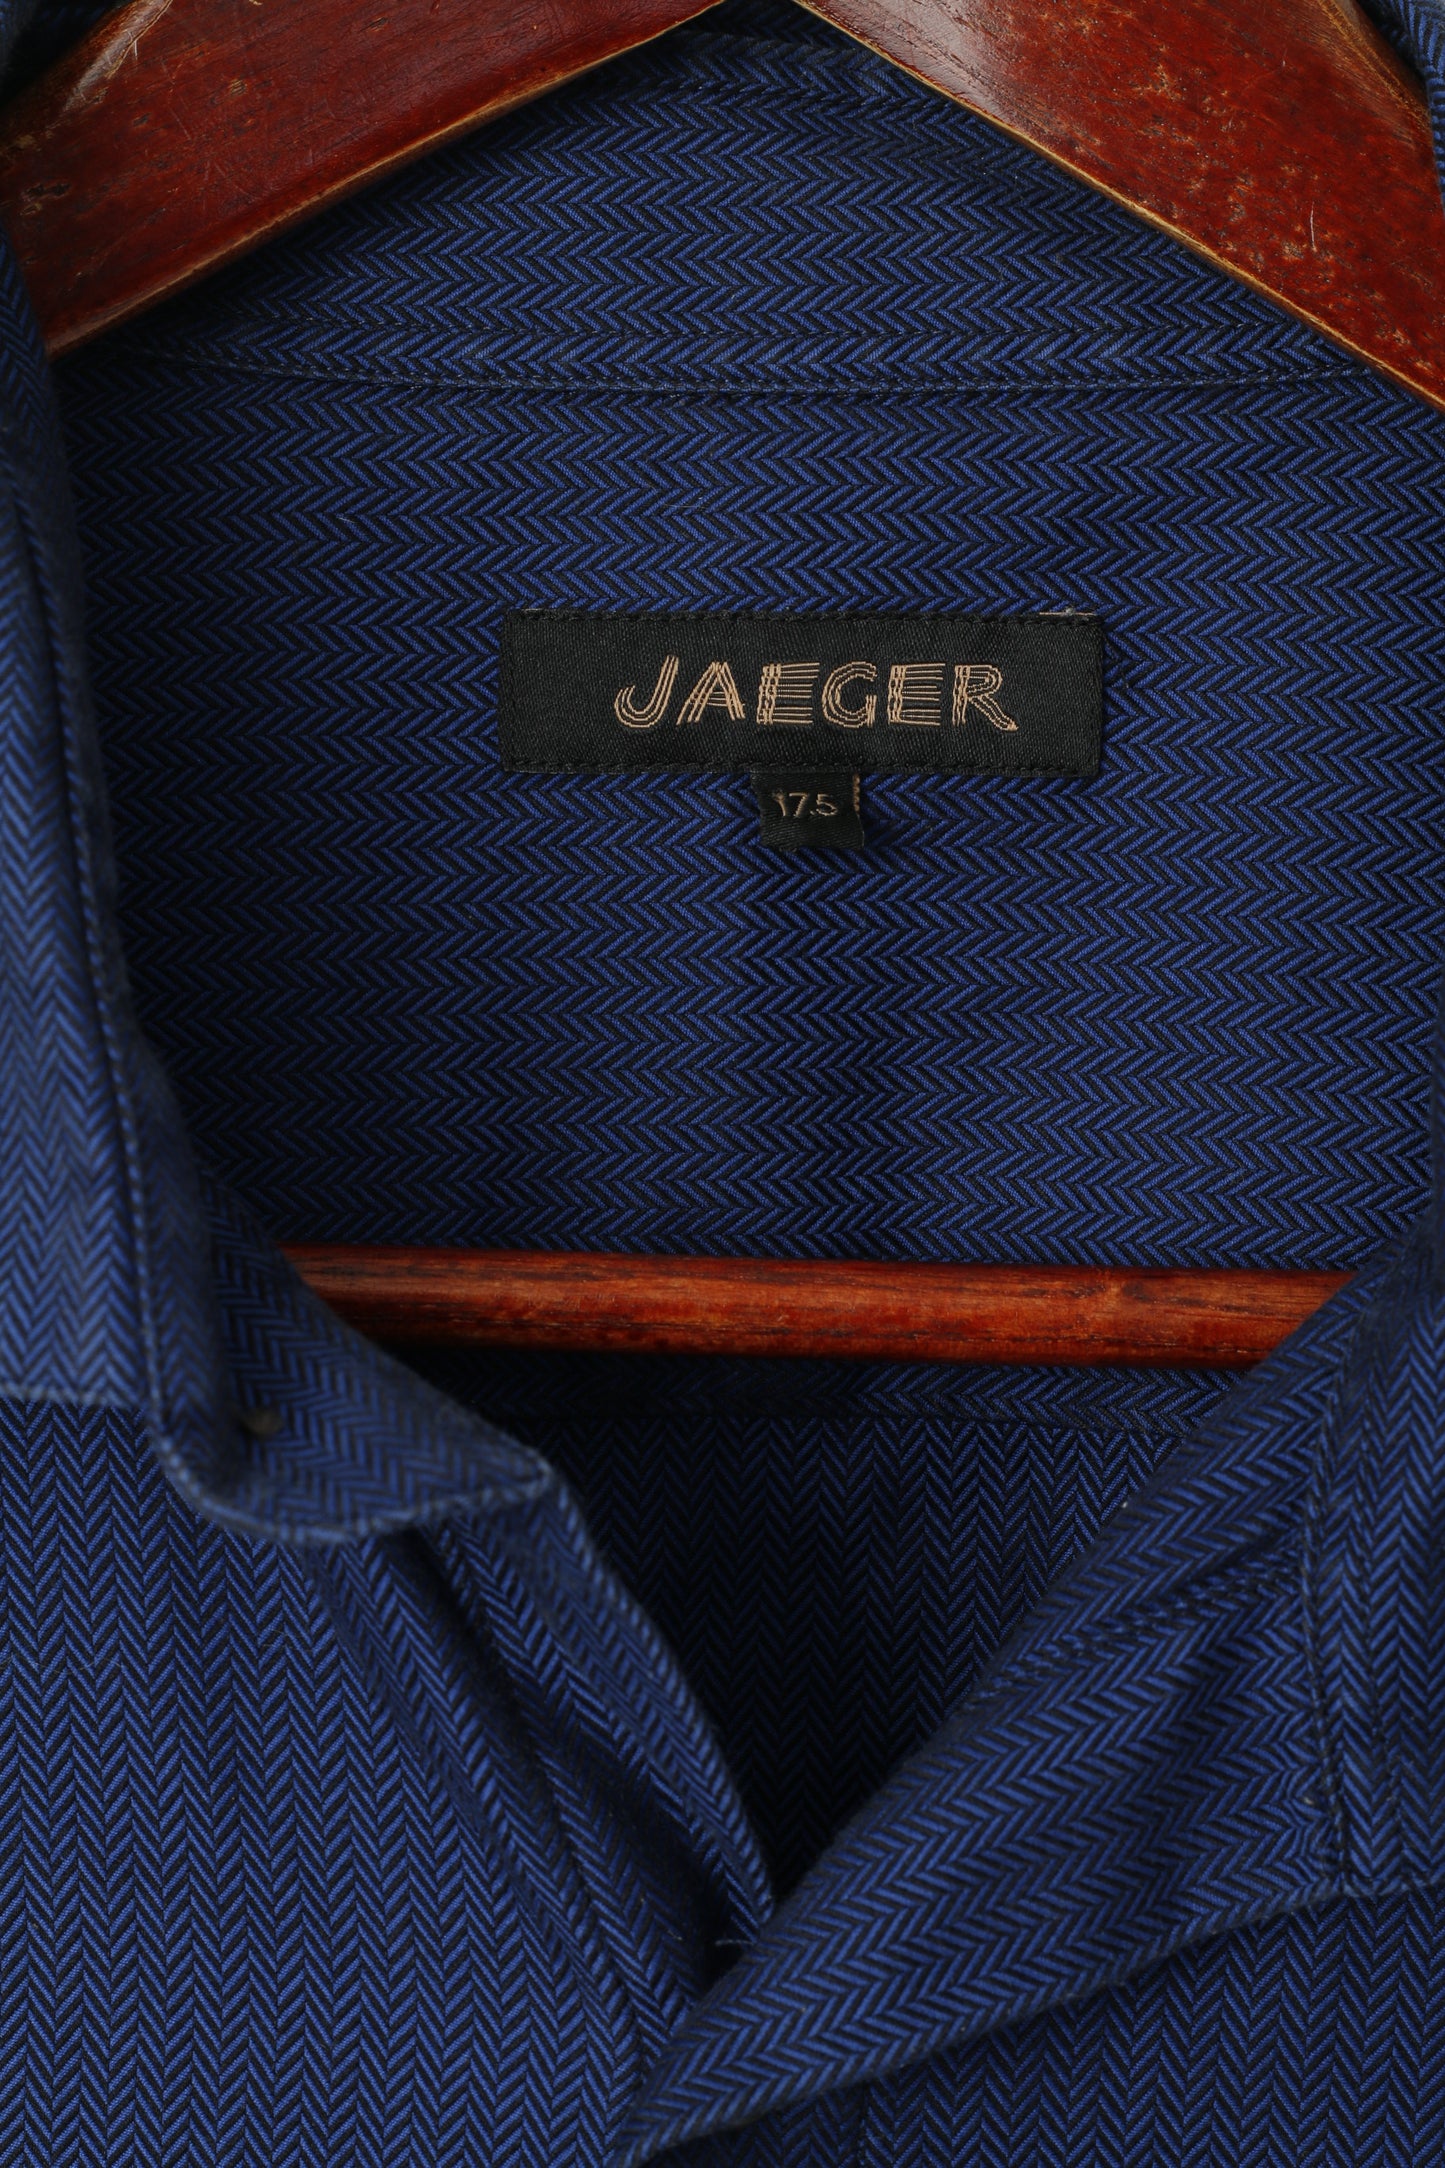 Jaeger Uomo 17,5 L Camicia casual Top a maniche lunghe in cotone a spina di pesce blu scuro